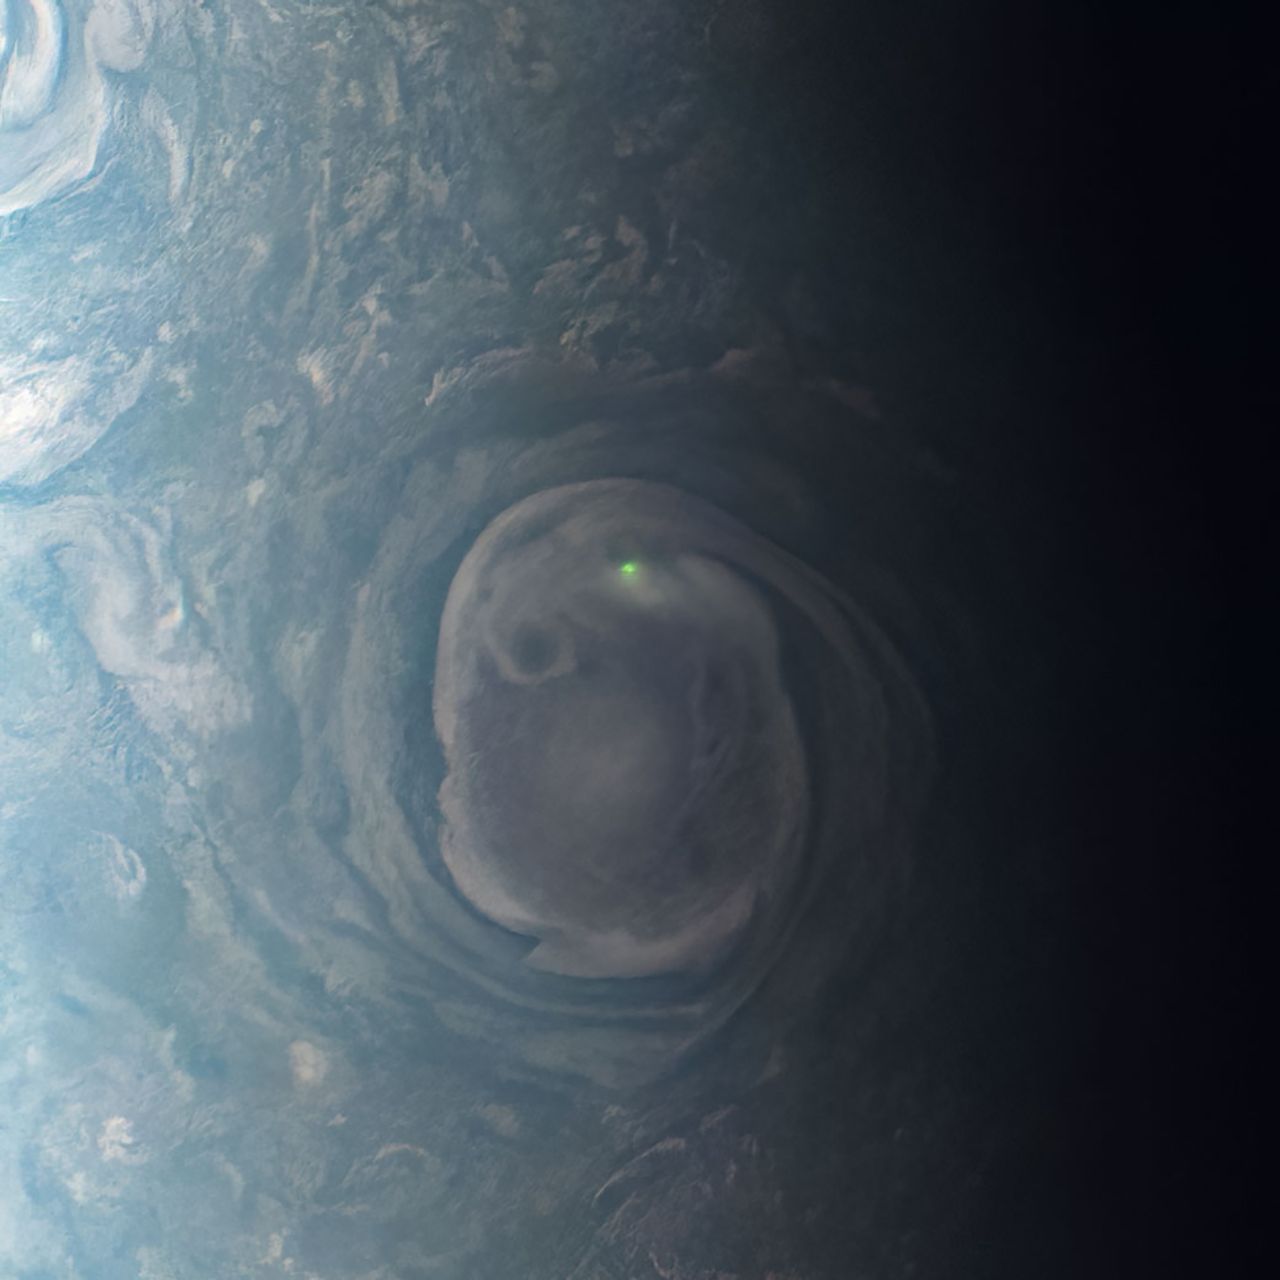 Sona Juno zarejestrowała zielony błysk 22 grudnia 2020 r., lecz dopiero teraz zdjęcie zostało pokazane publicznie.